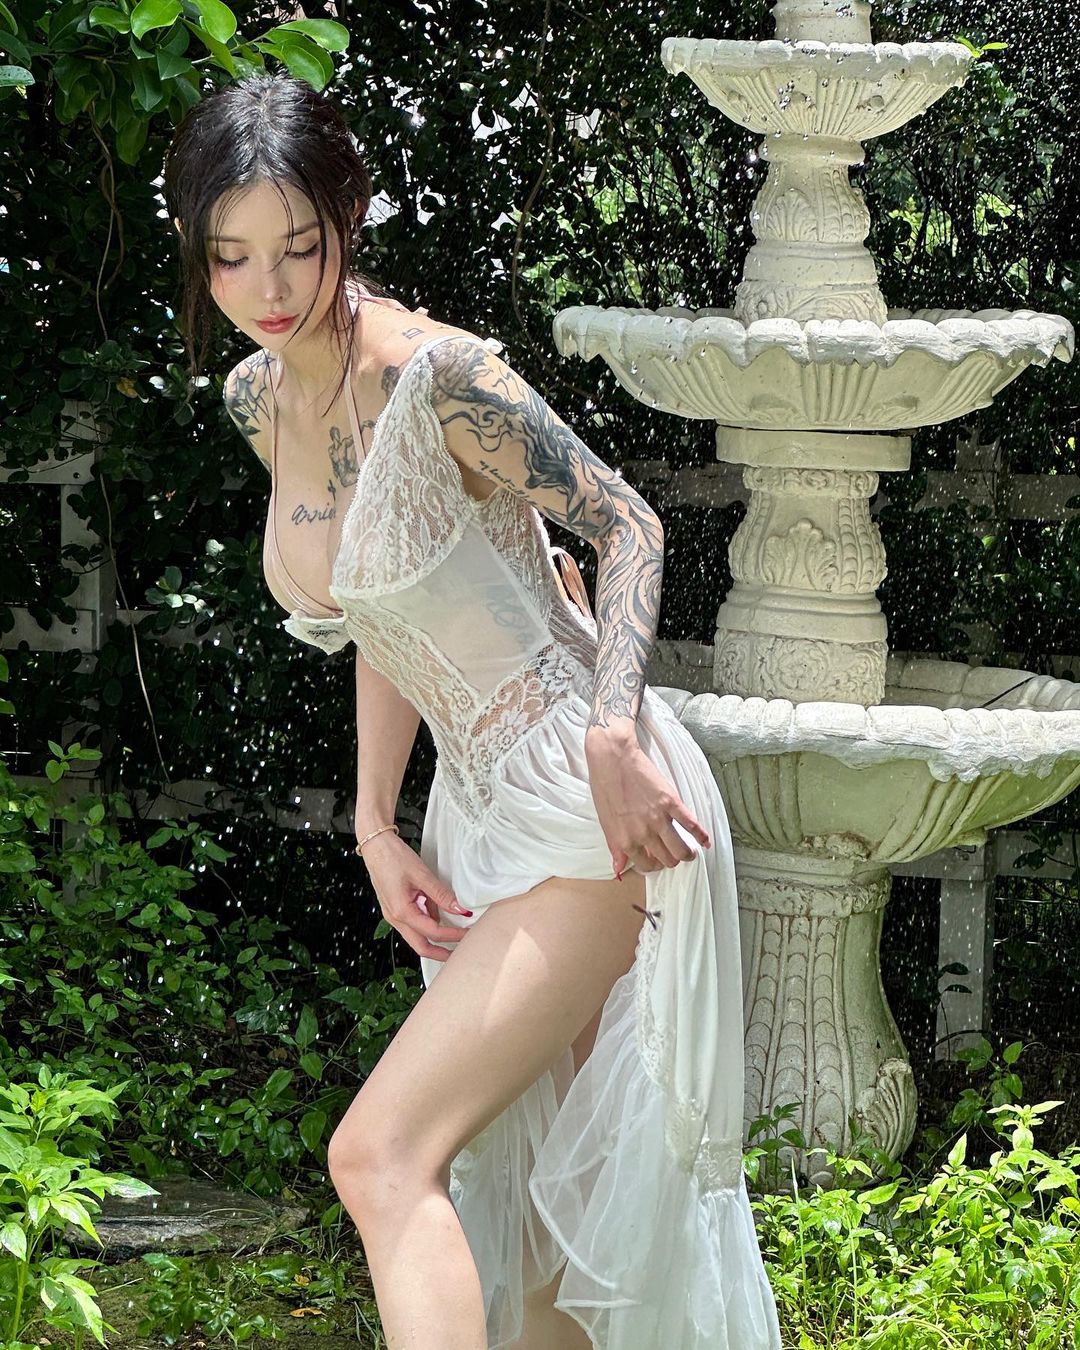 Người đẹp Trung Quốc gây ấn tượng với shoot hình mặc váy lụa chụp hình trong vườn.